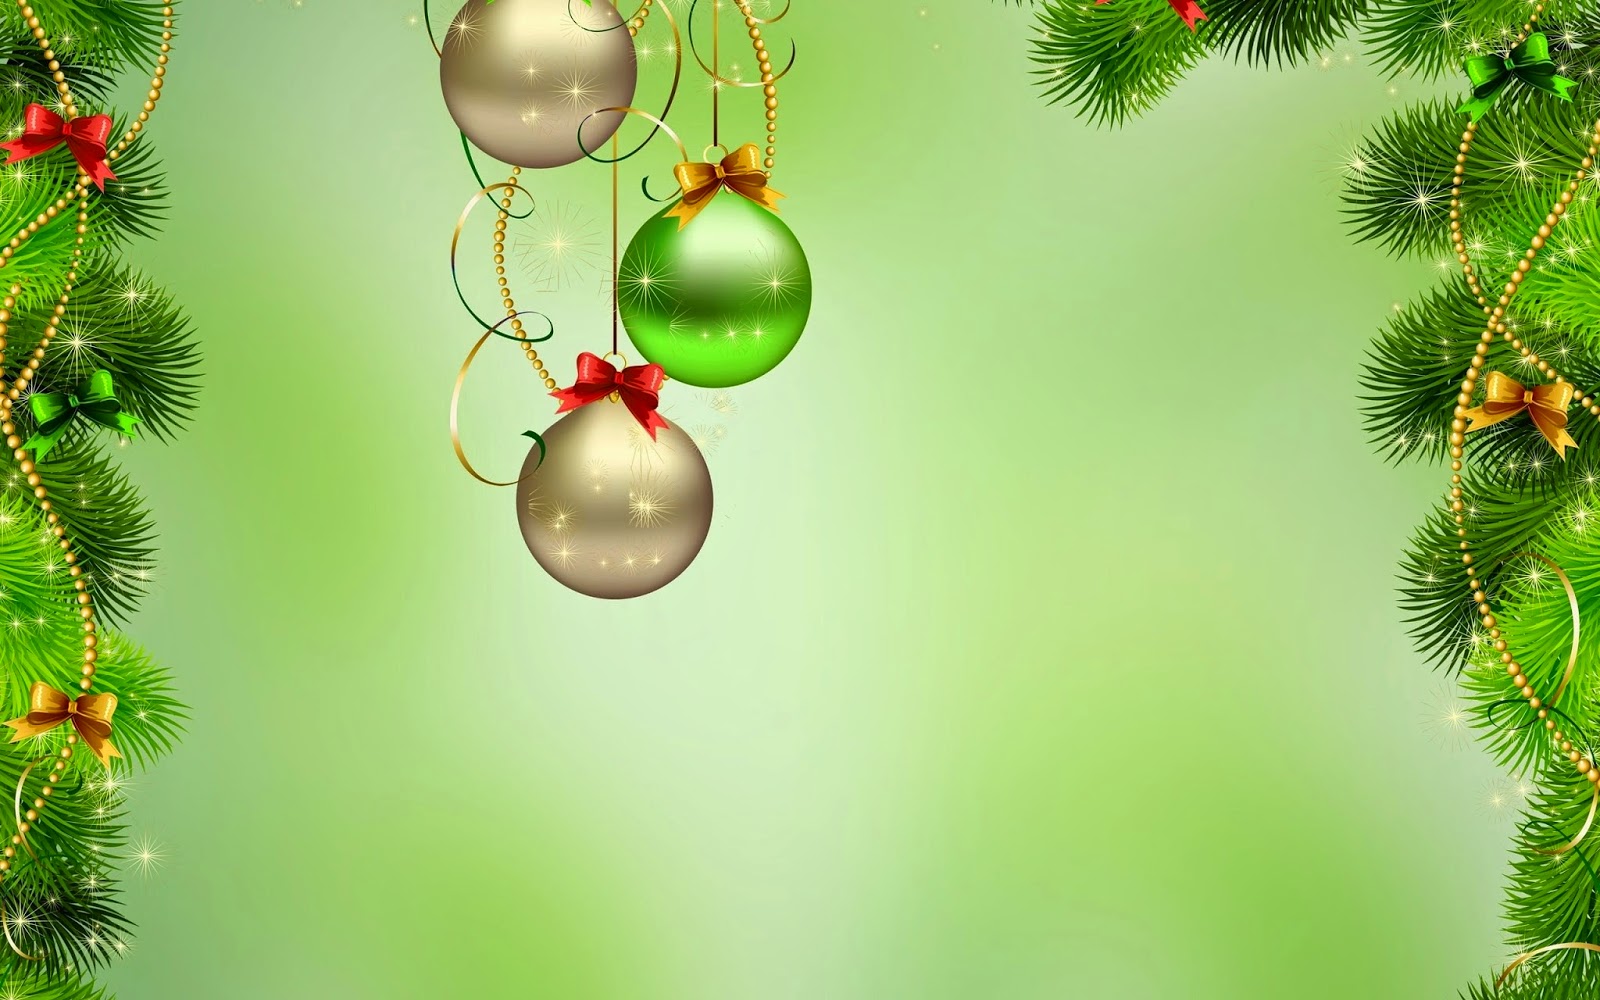 クリスマスカードの壁紙,クリスマスオーナメント,緑,クリスマスの飾り,木,クリスマスツリー